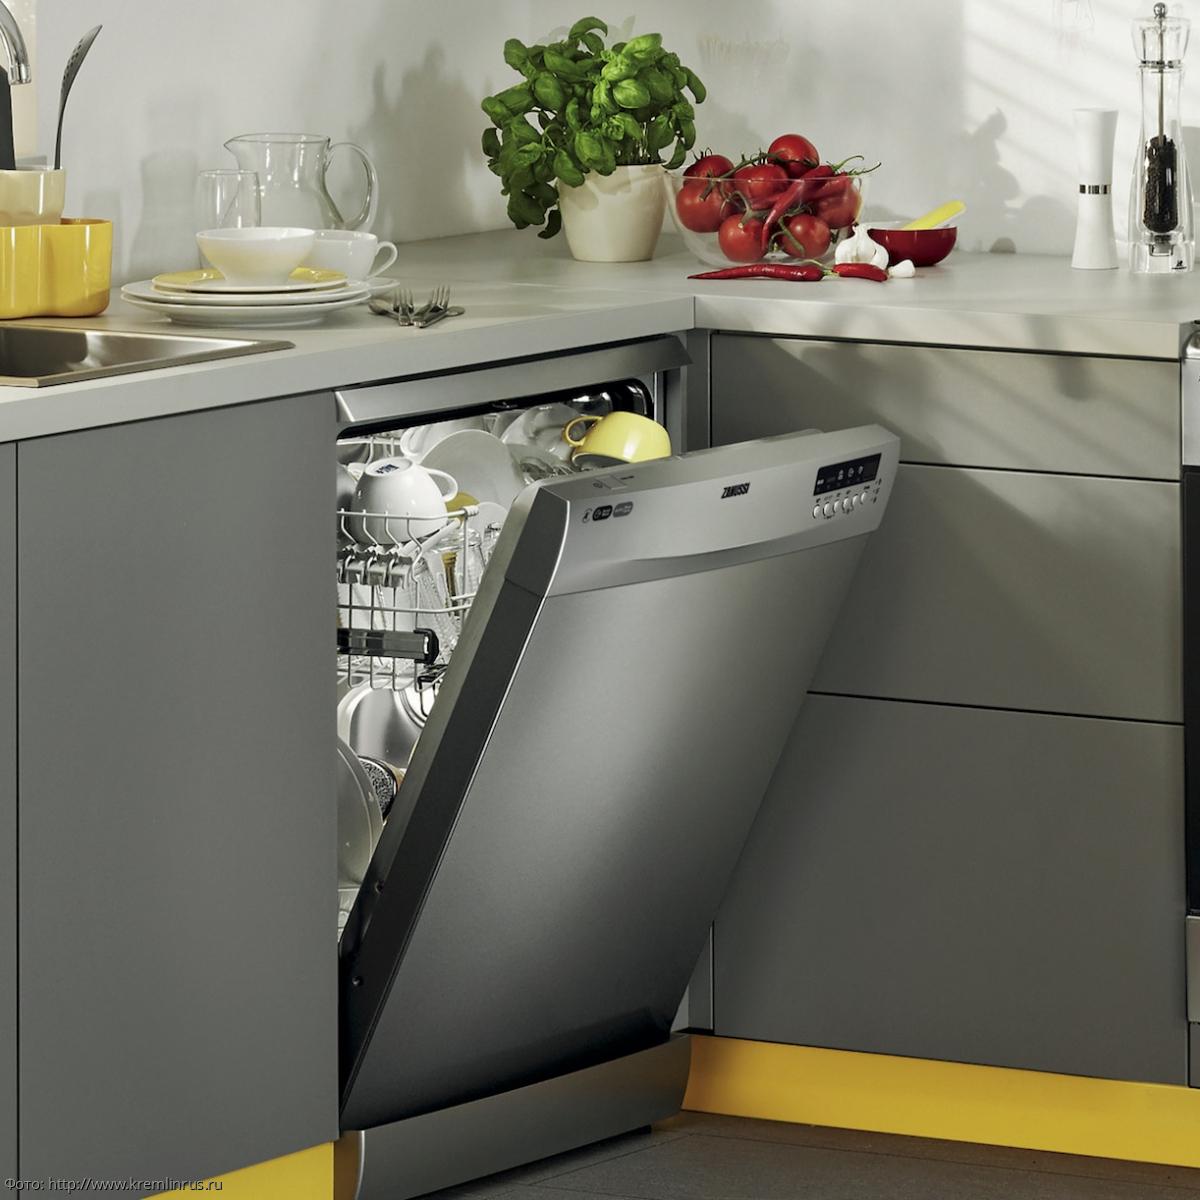 Встроенная посудомойка узкая. Td 55 Valara посудомоечная машина. Посудомоечная машина встраиваемая 45 см под мойку. Td 55 Valara посудомоечная машина (настольная). Посудомоечная машина Delonghi ddw07t.